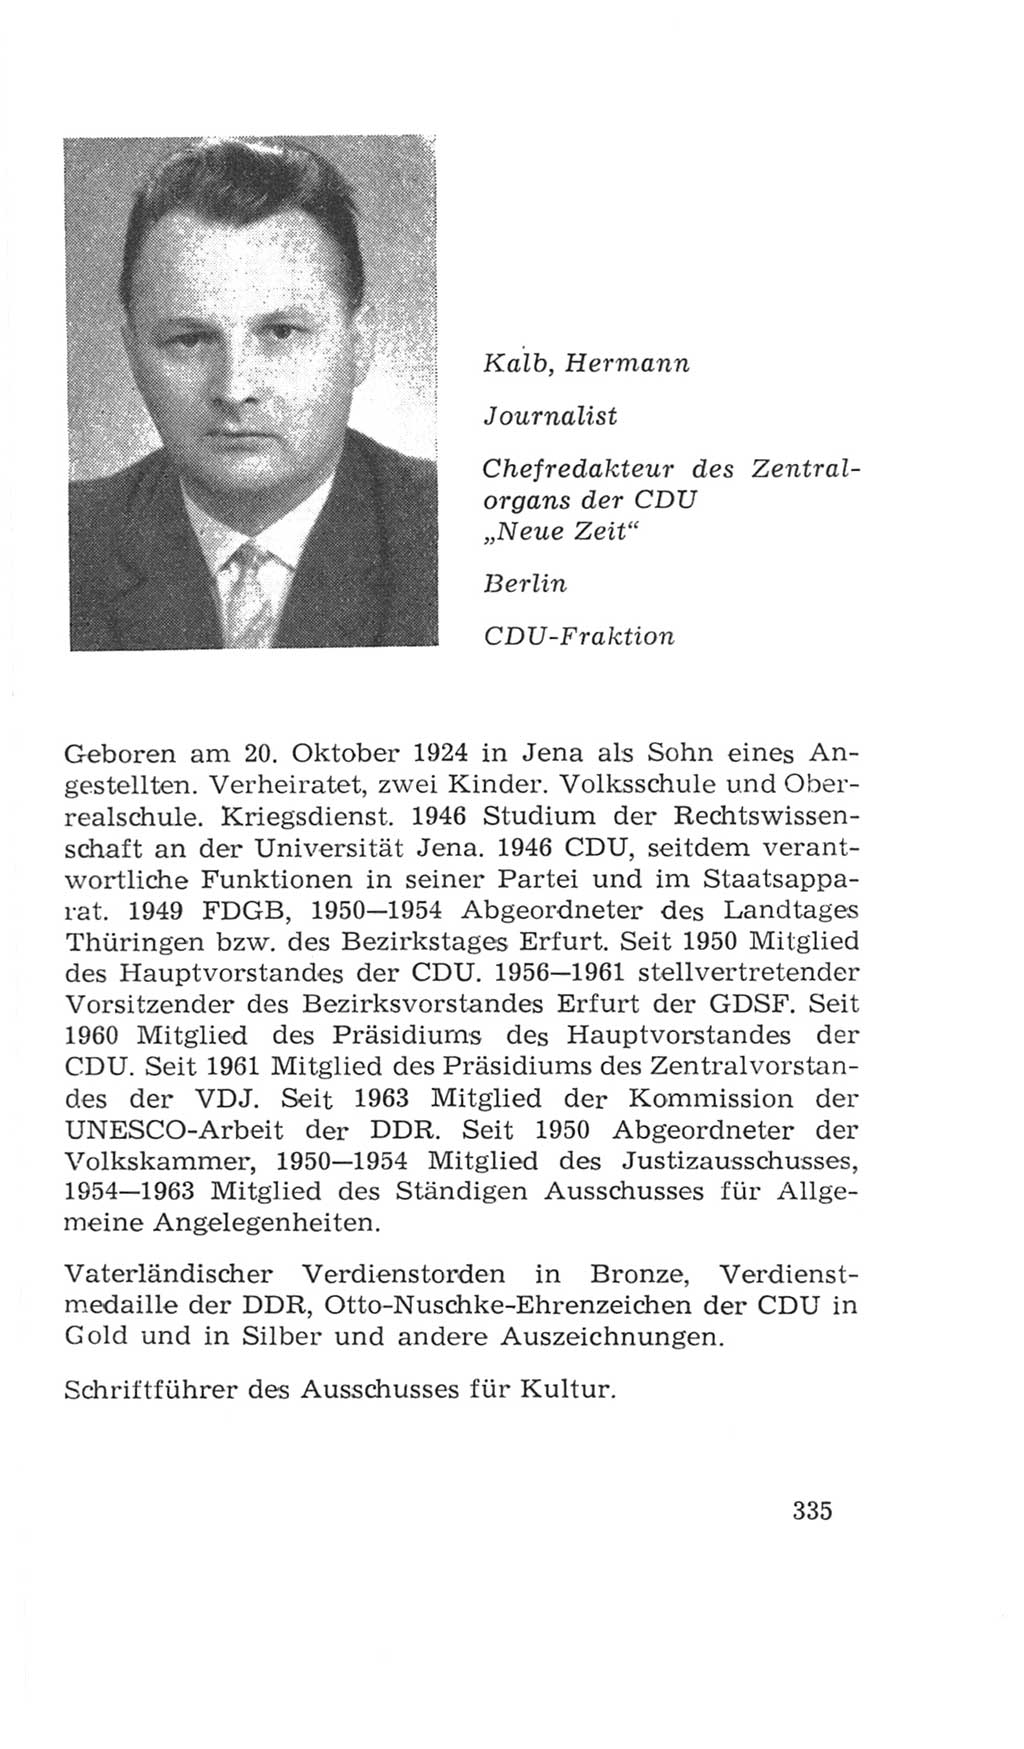 Volkskammer (VK) der Deutschen Demokratischen Republik (DDR), 4. Wahlperiode 1963-1967, Seite 335 (VK. DDR 4. WP. 1963-1967, S. 335)